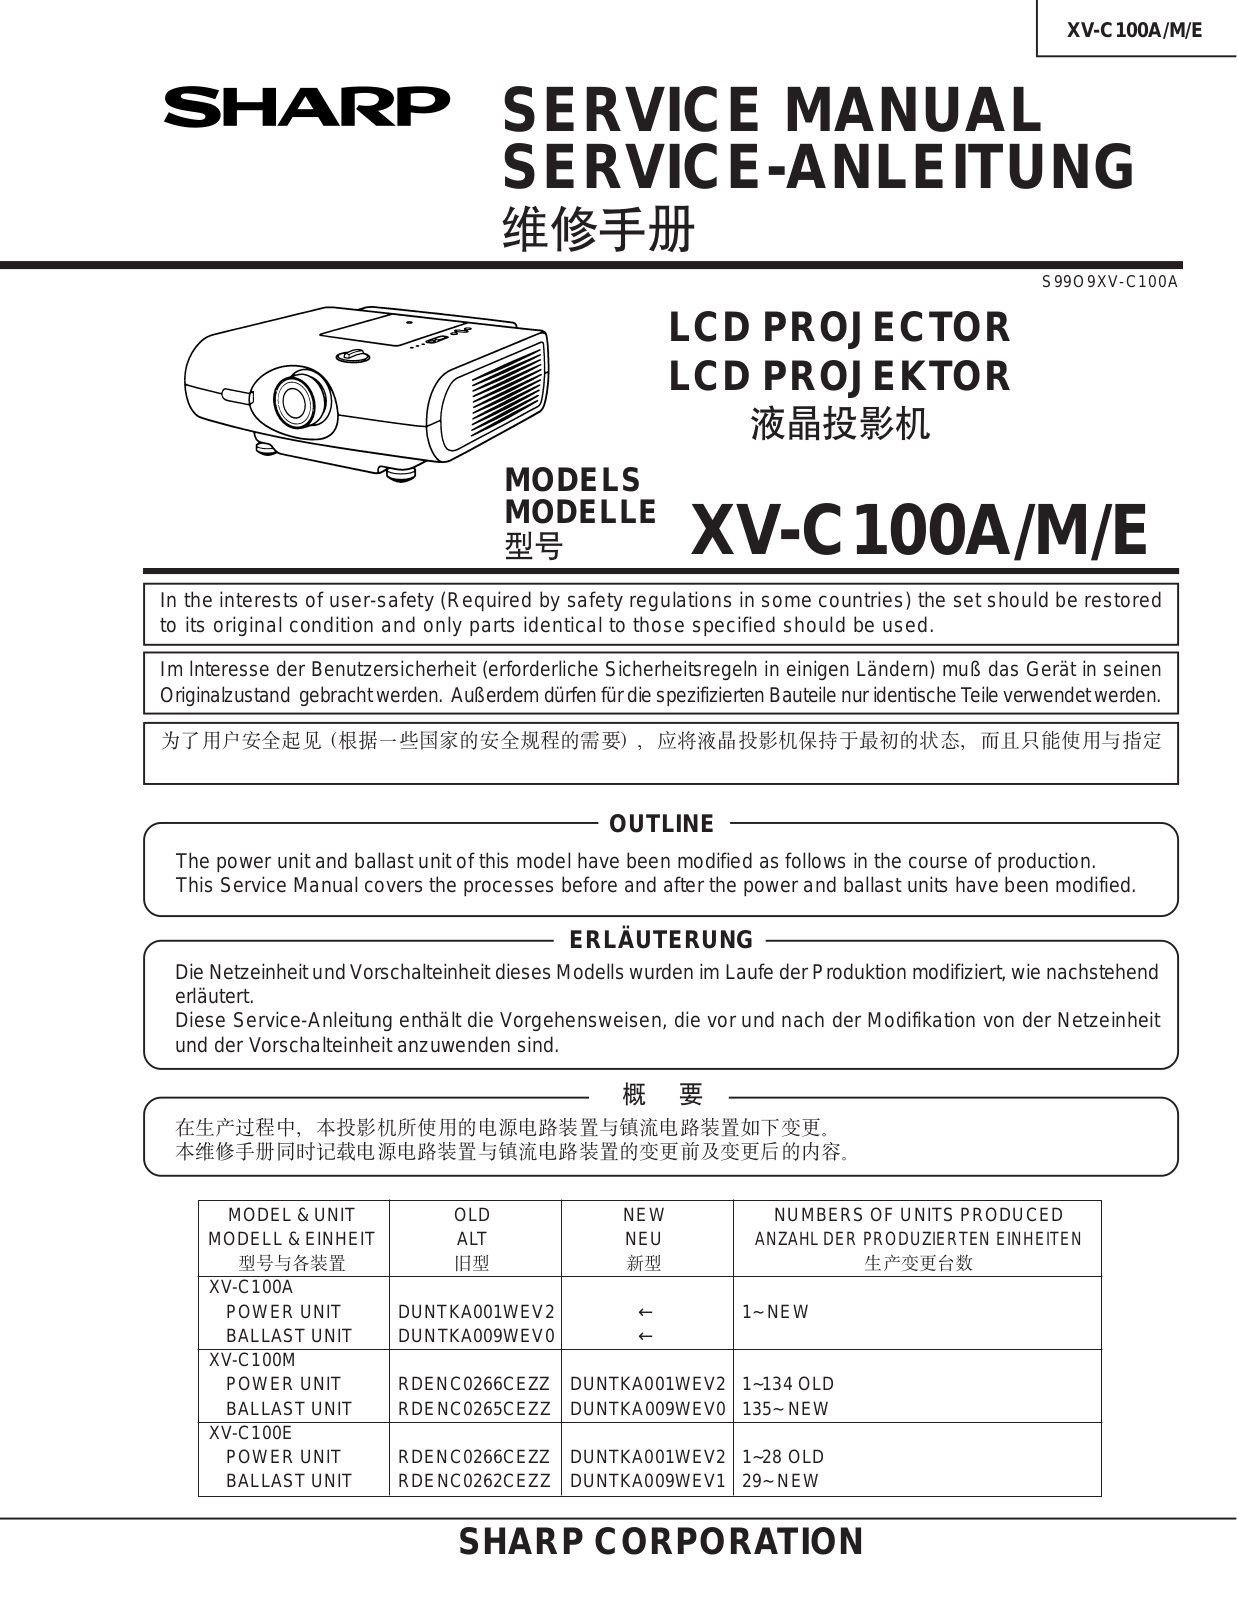 Sharp XV-C100E, XV-C100M, XV-C100A Service Manual